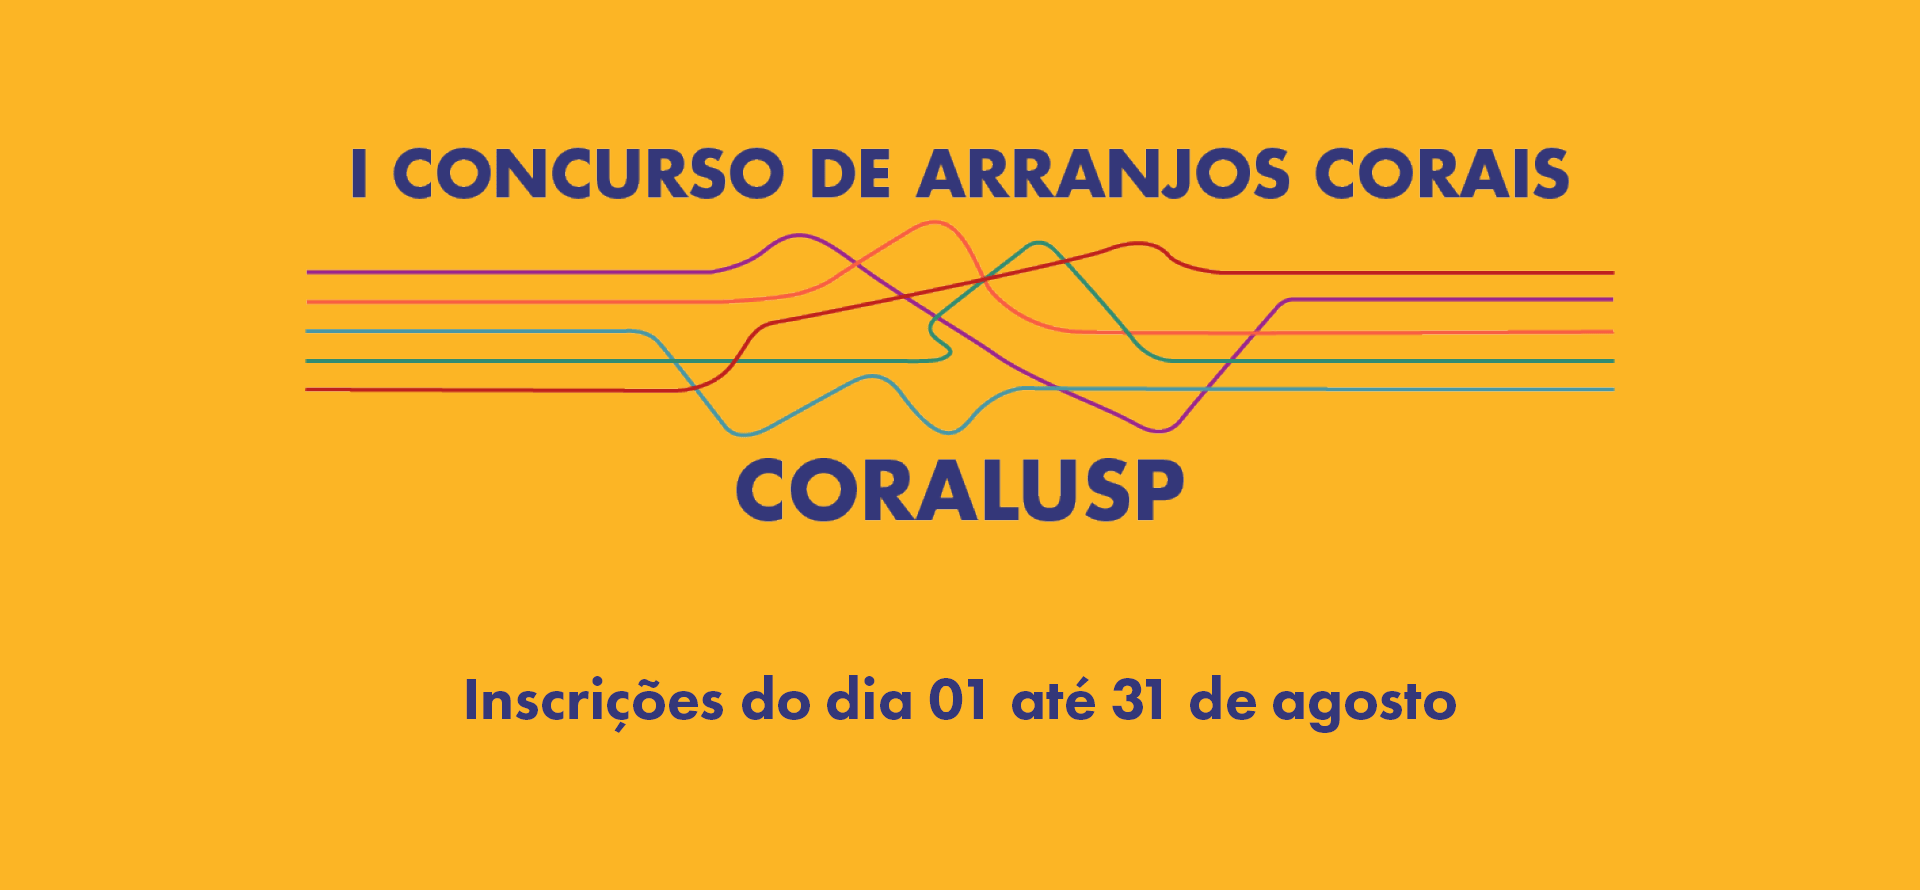 (Português) Concurso de Arranjos Corais Coralusp